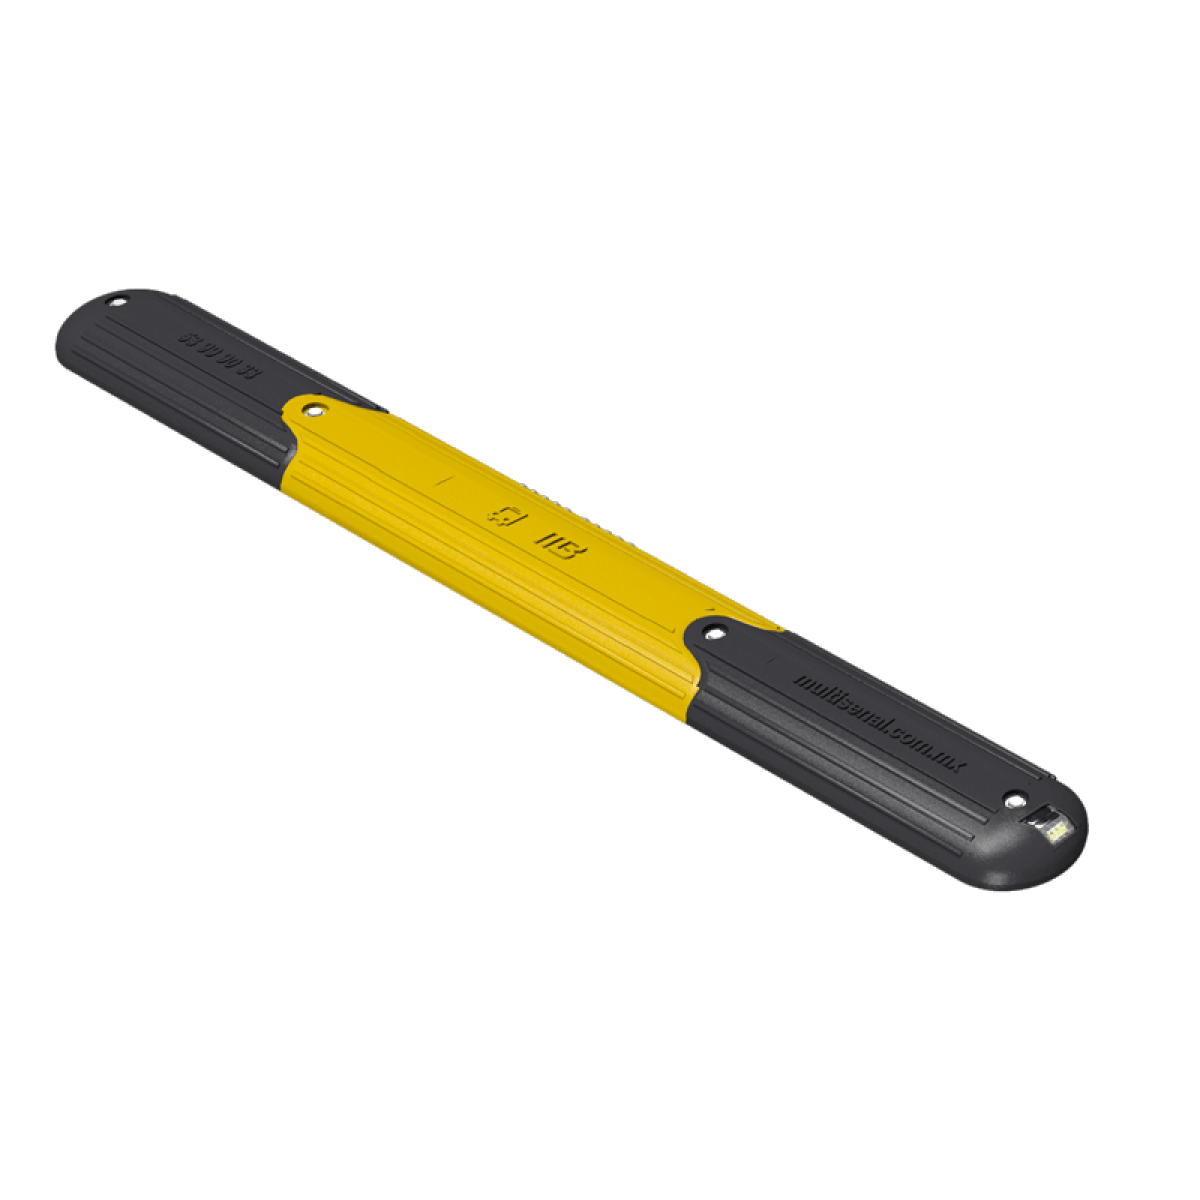 Código: CRR-3 Resistente canalizador diseñado especialmente para confinar el carril del metrobús, ciclovías, con la altura adecuada para no dañar los vehículos en caso de atropellarlo. Es fácil de limpiar, no necesita tratamientos especiales y sus componentes no dañan el medio ambiente. Formado por módulos ensamblables fabricadas en polietileno de alta densidad. Medidas: Largo: 130.0 cm. Alto: 5.0 cm. Ancho: 15.0 cm. Colores: amarillo y negro.